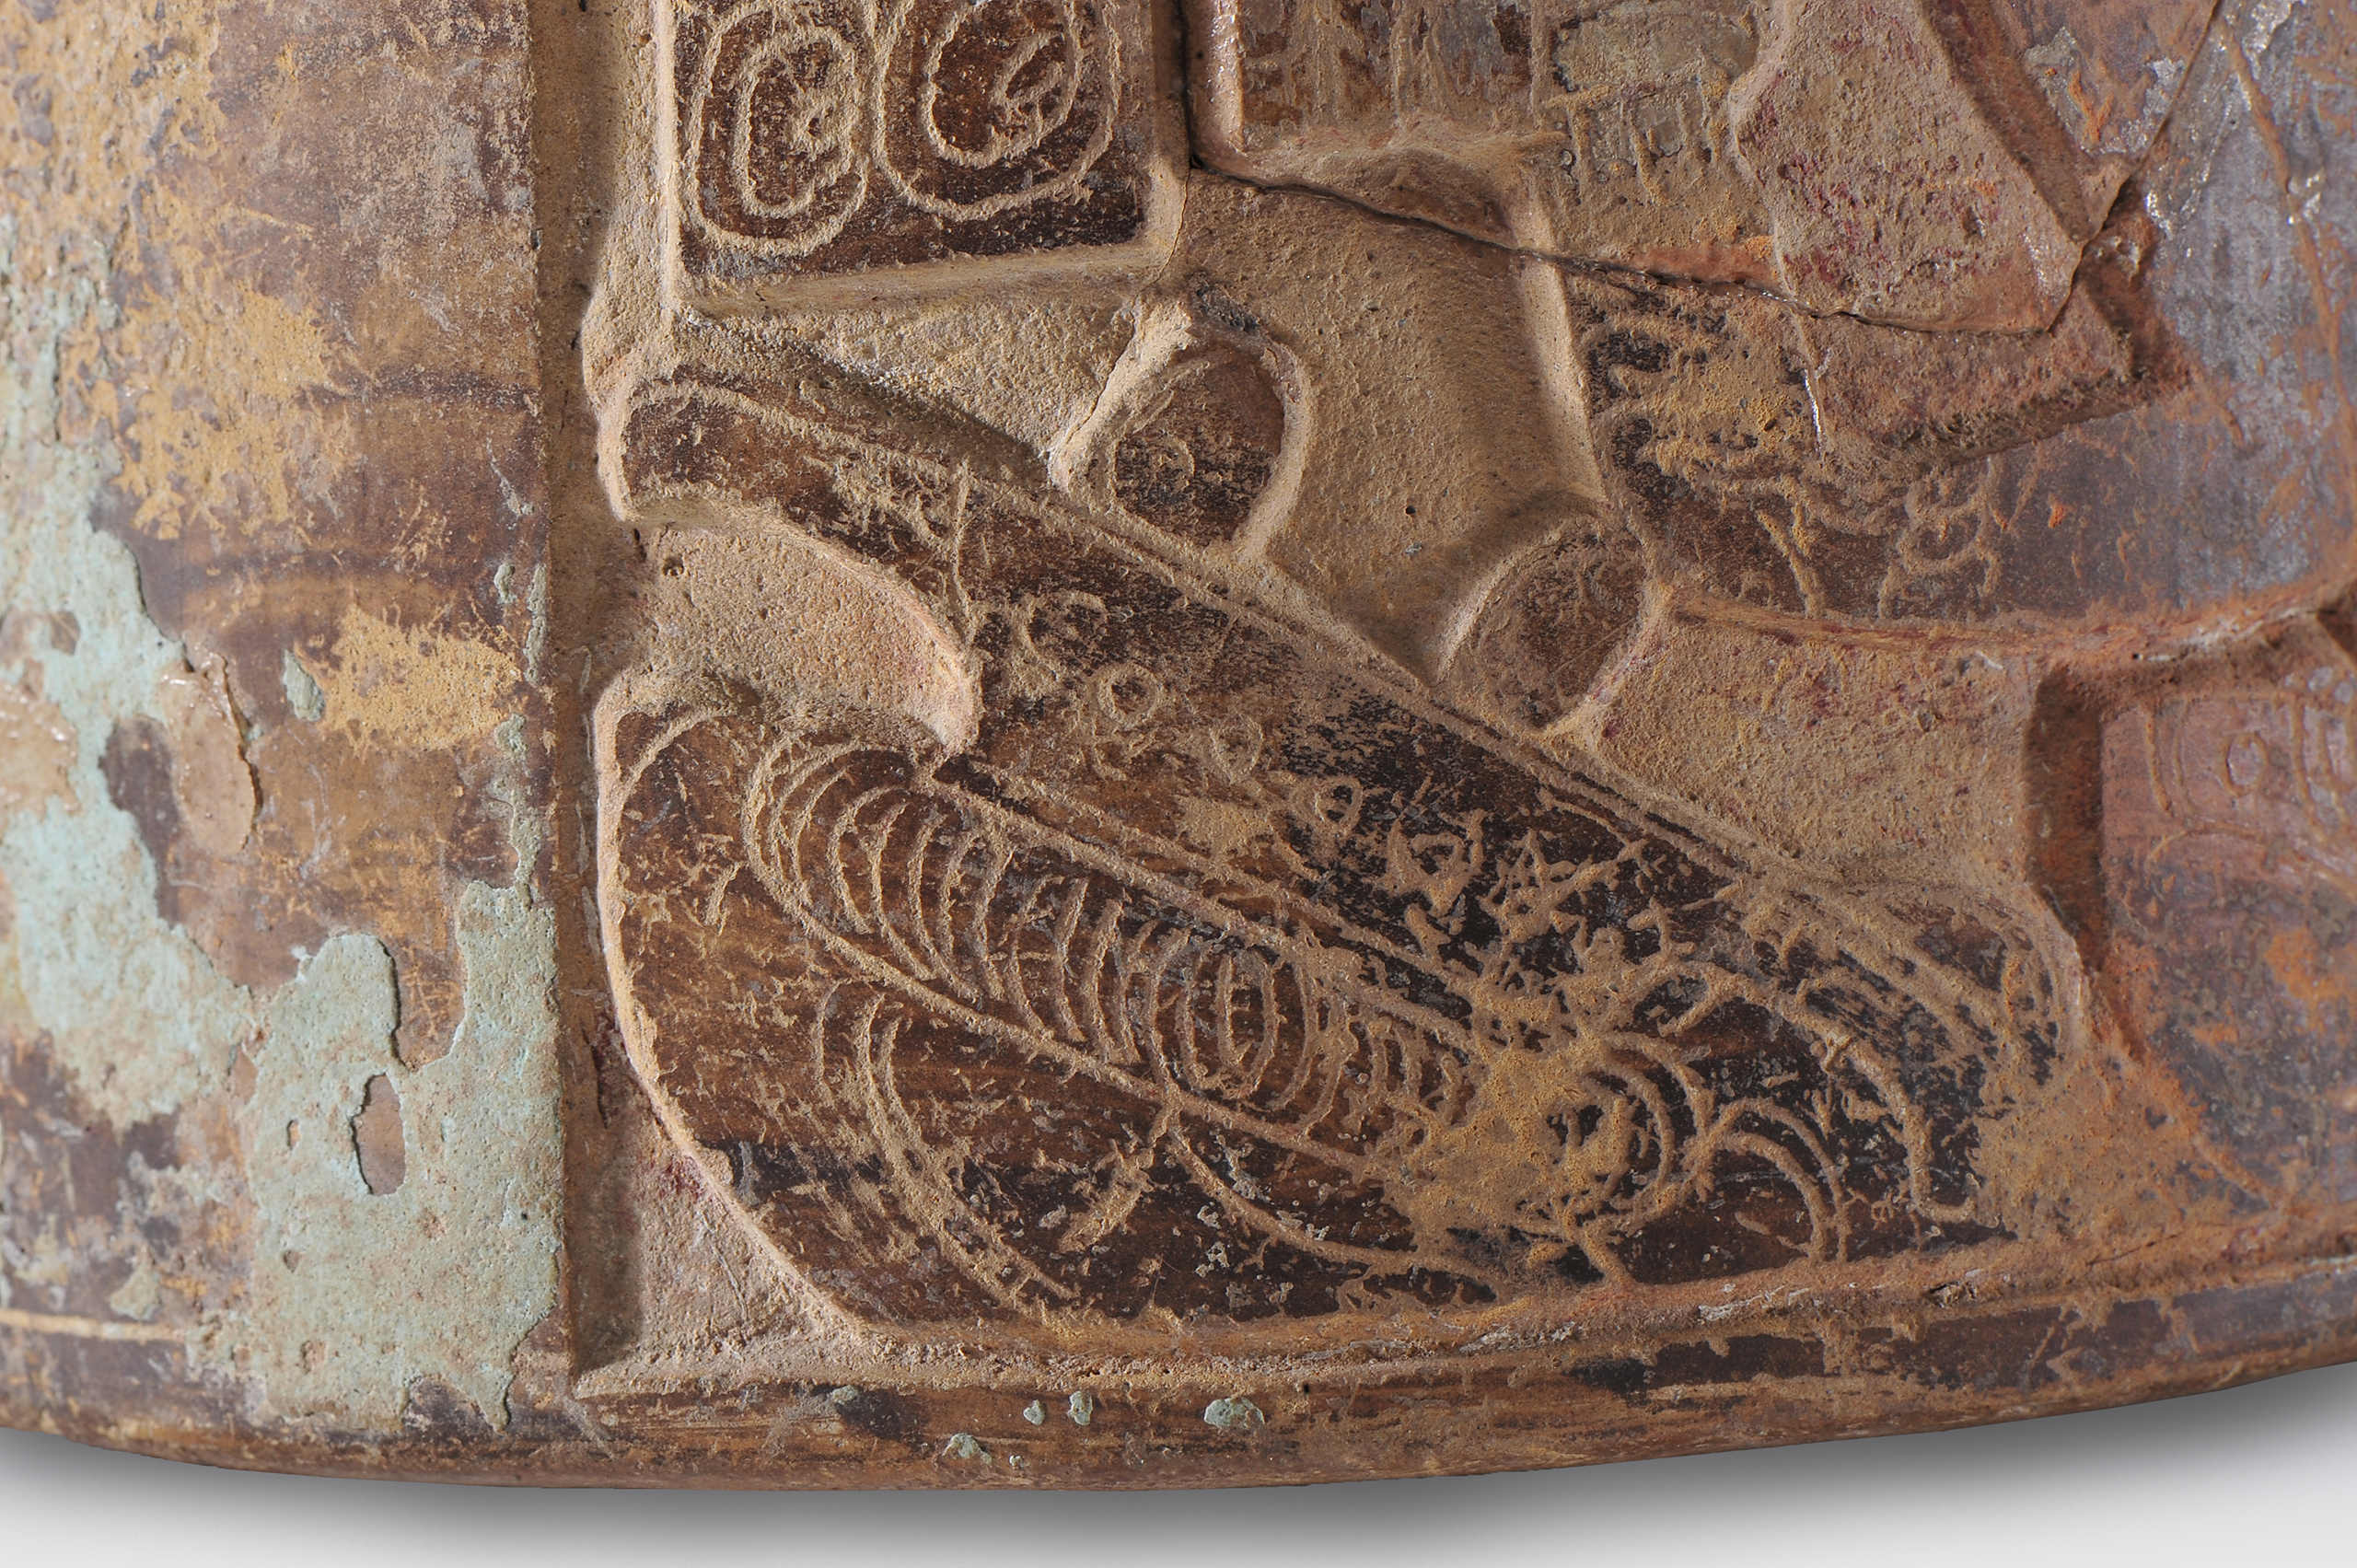 Vaso con representación de dos personajes | El México antiguo. Salas de Arte Prehispánico | Museo Amparo, Puebla